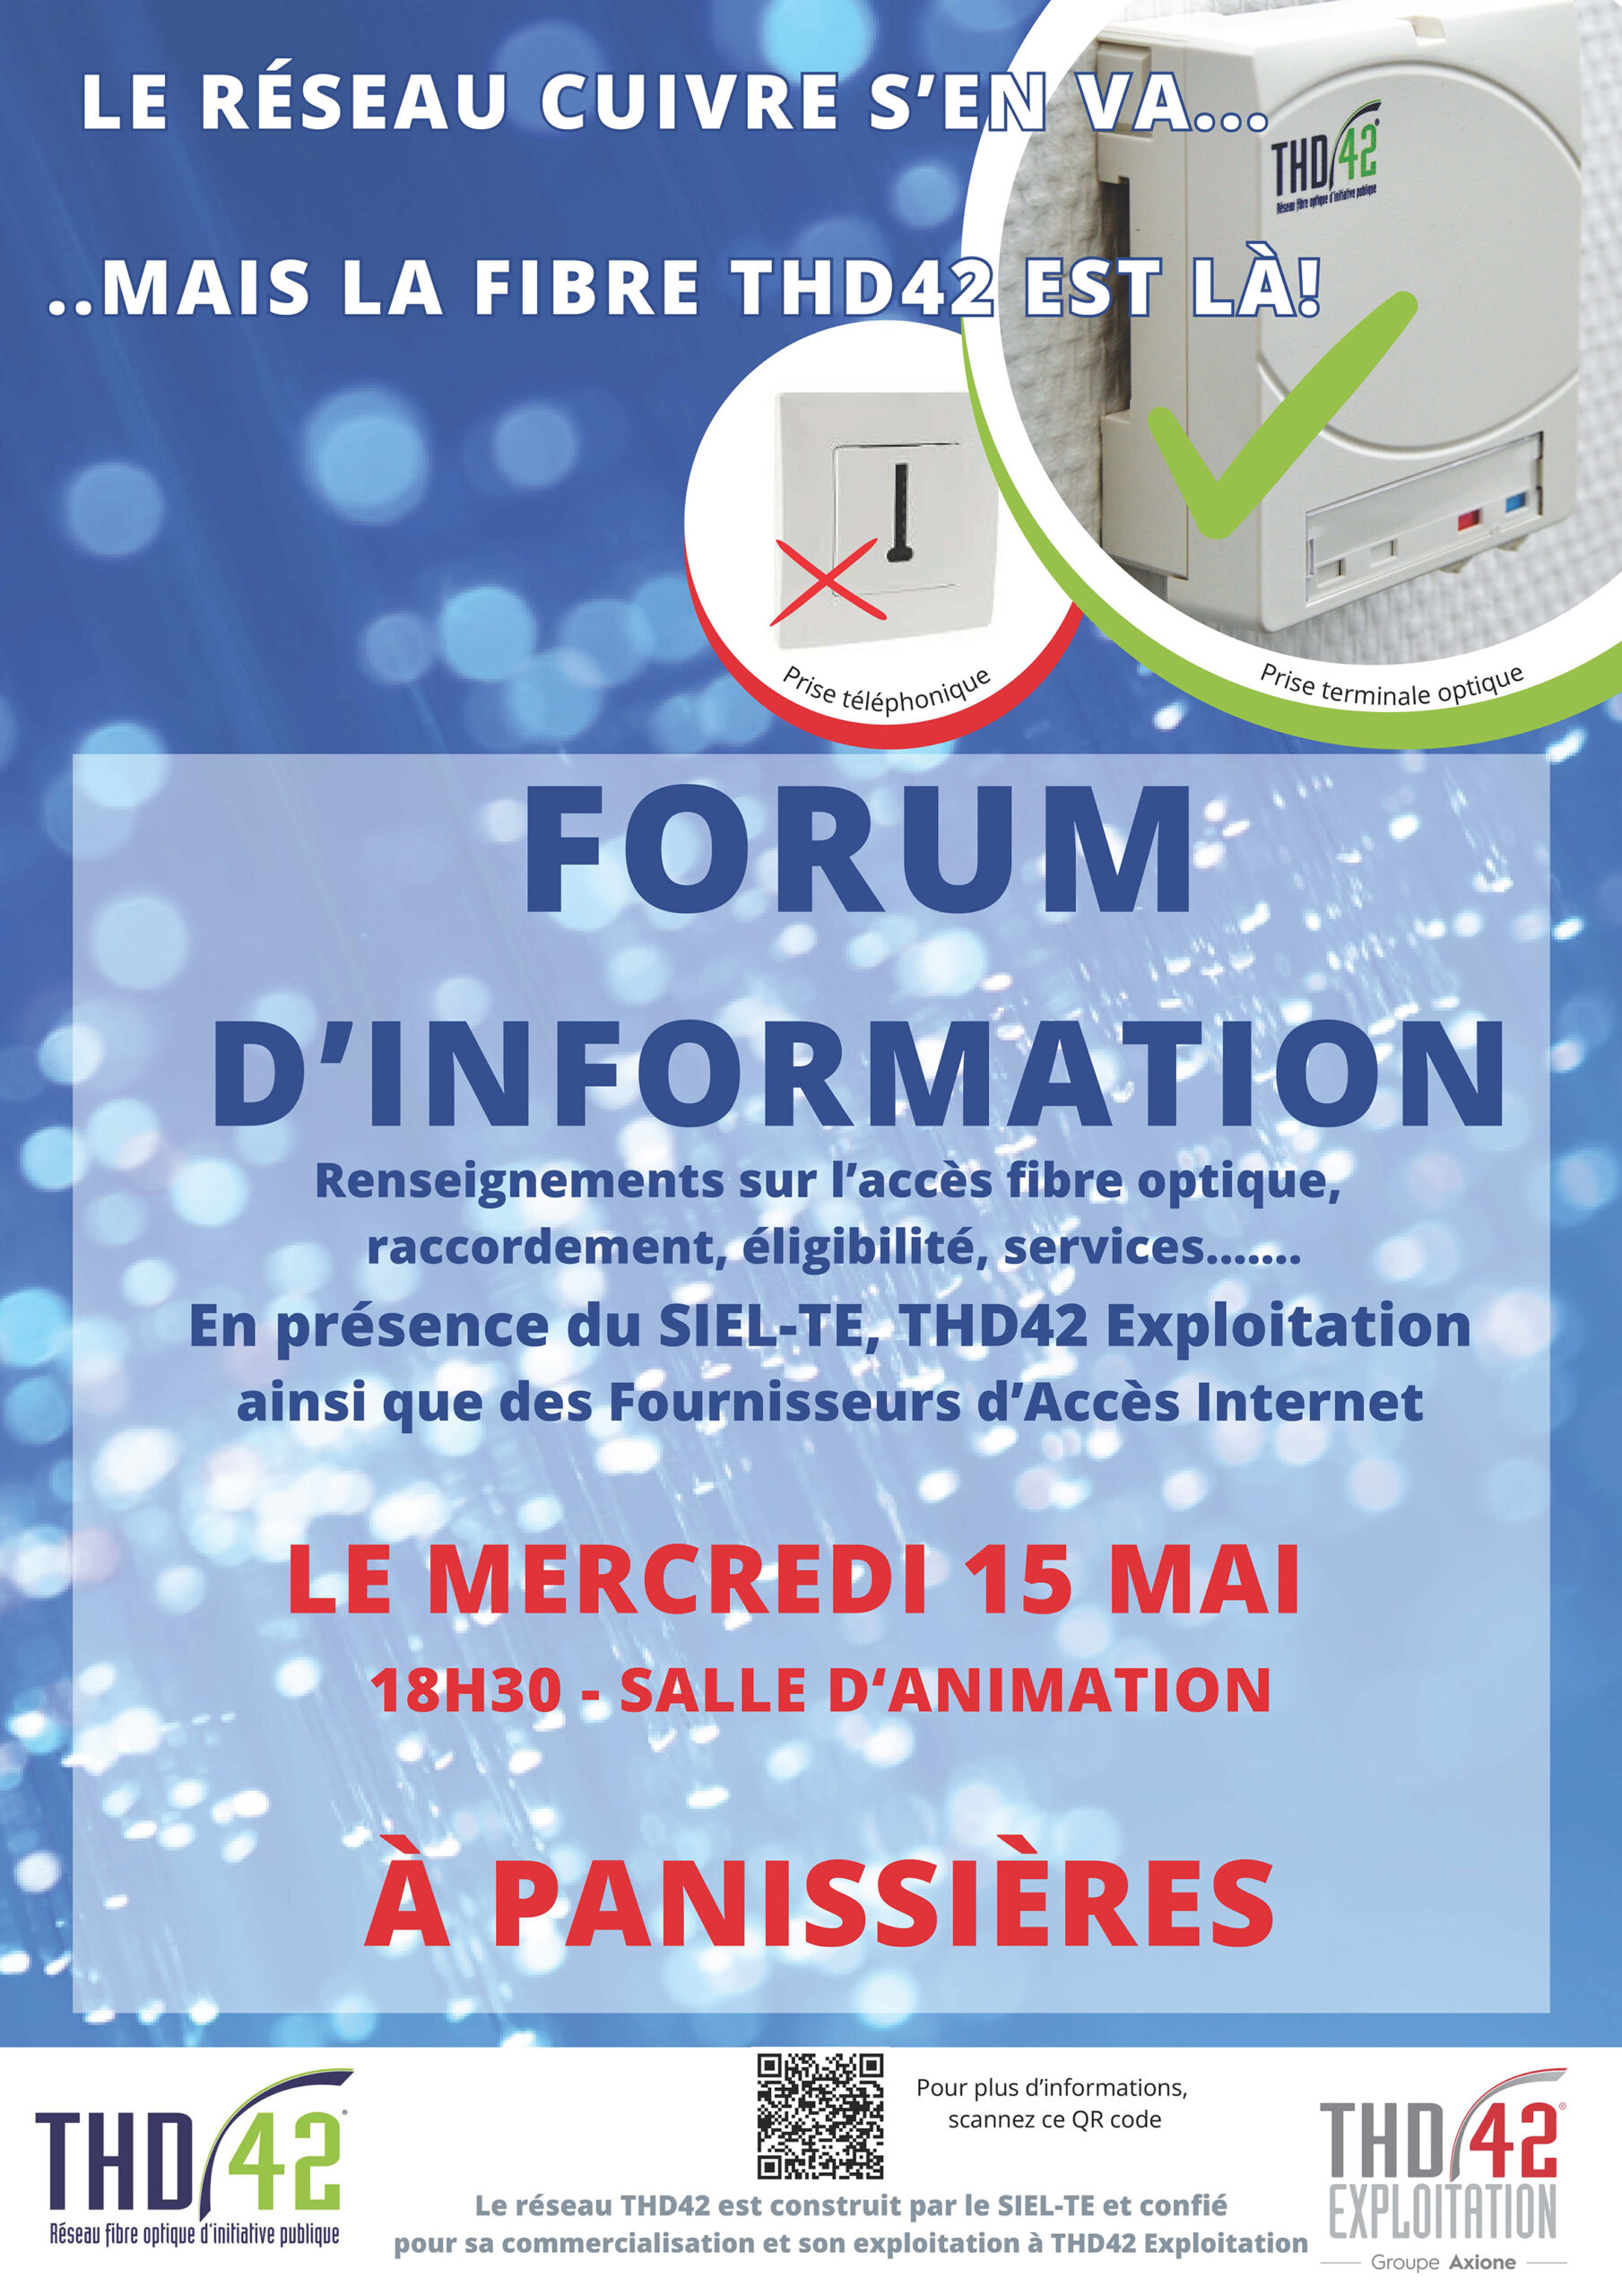 You are currently viewing Fermeture du réseau cuivre : forum d’information